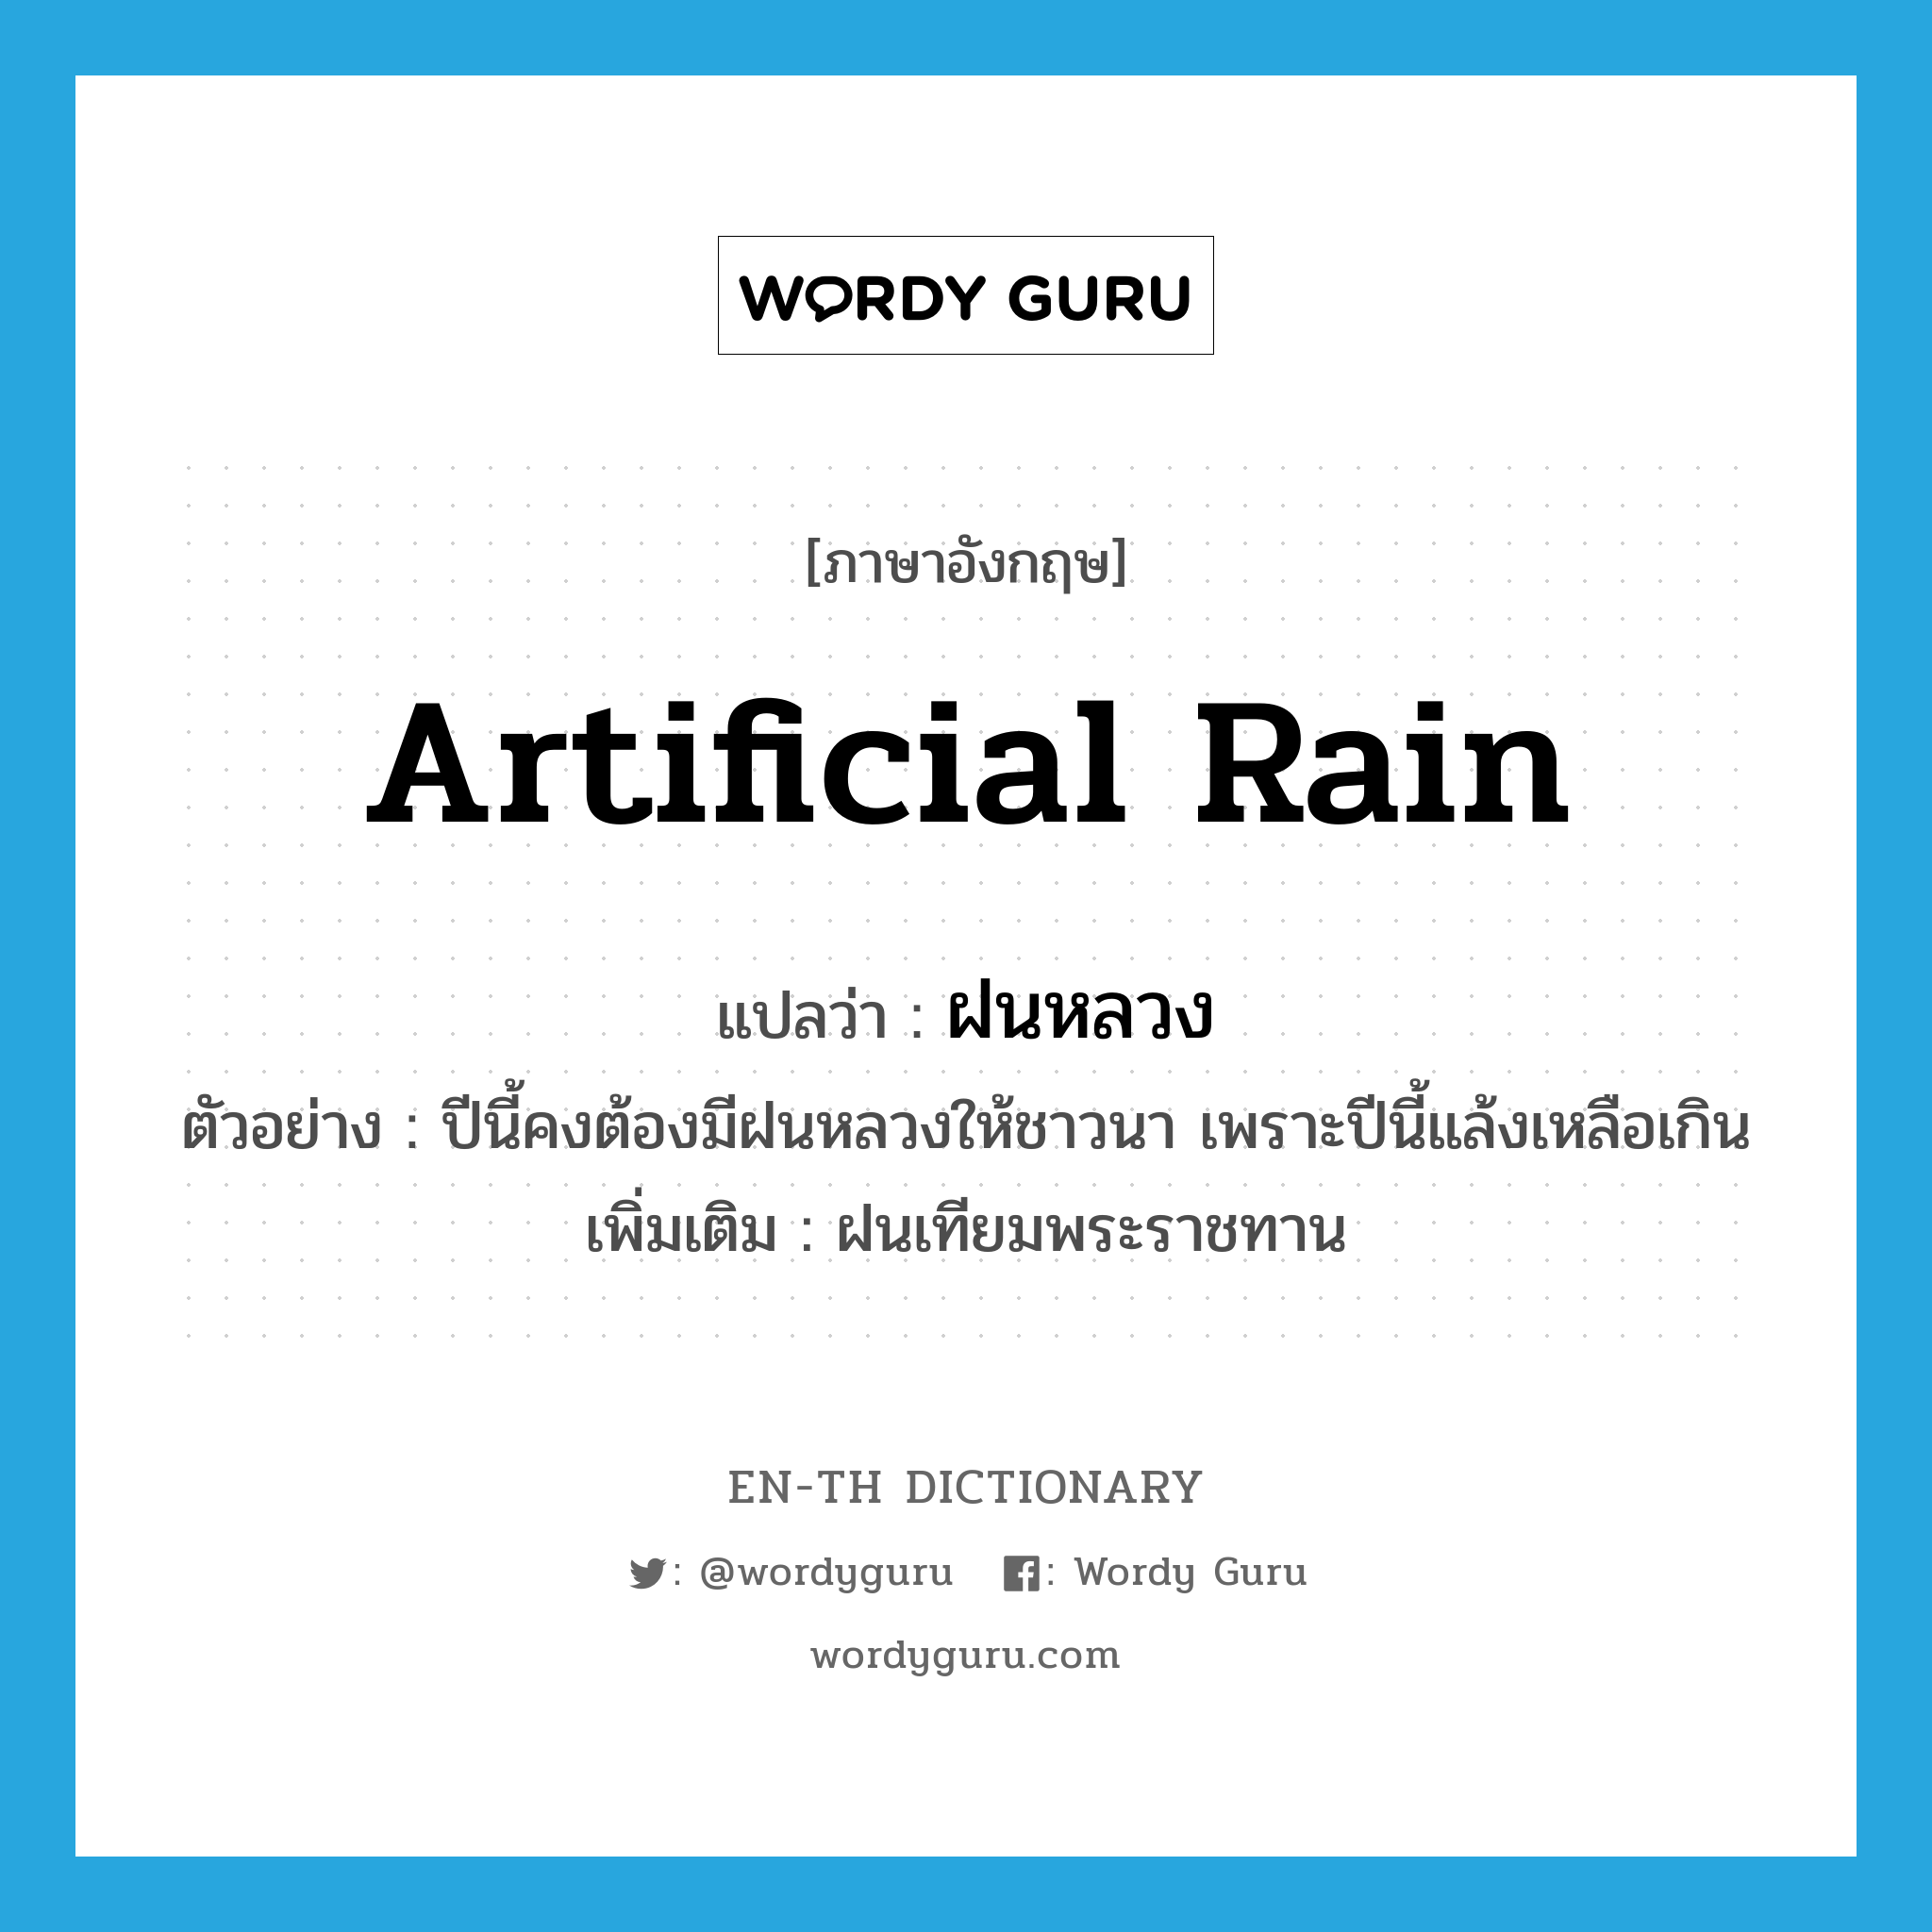 artificial rain แปลว่า?, คำศัพท์ภาษาอังกฤษ artificial rain แปลว่า ฝนหลวง ประเภท N ตัวอย่าง ปีนี้คงต้องมีฝนหลวงให้ชาวนา เพราะปีนี้แล้งเหลือเกิน เพิ่มเติม ฝนเทียมพระราชทาน หมวด N